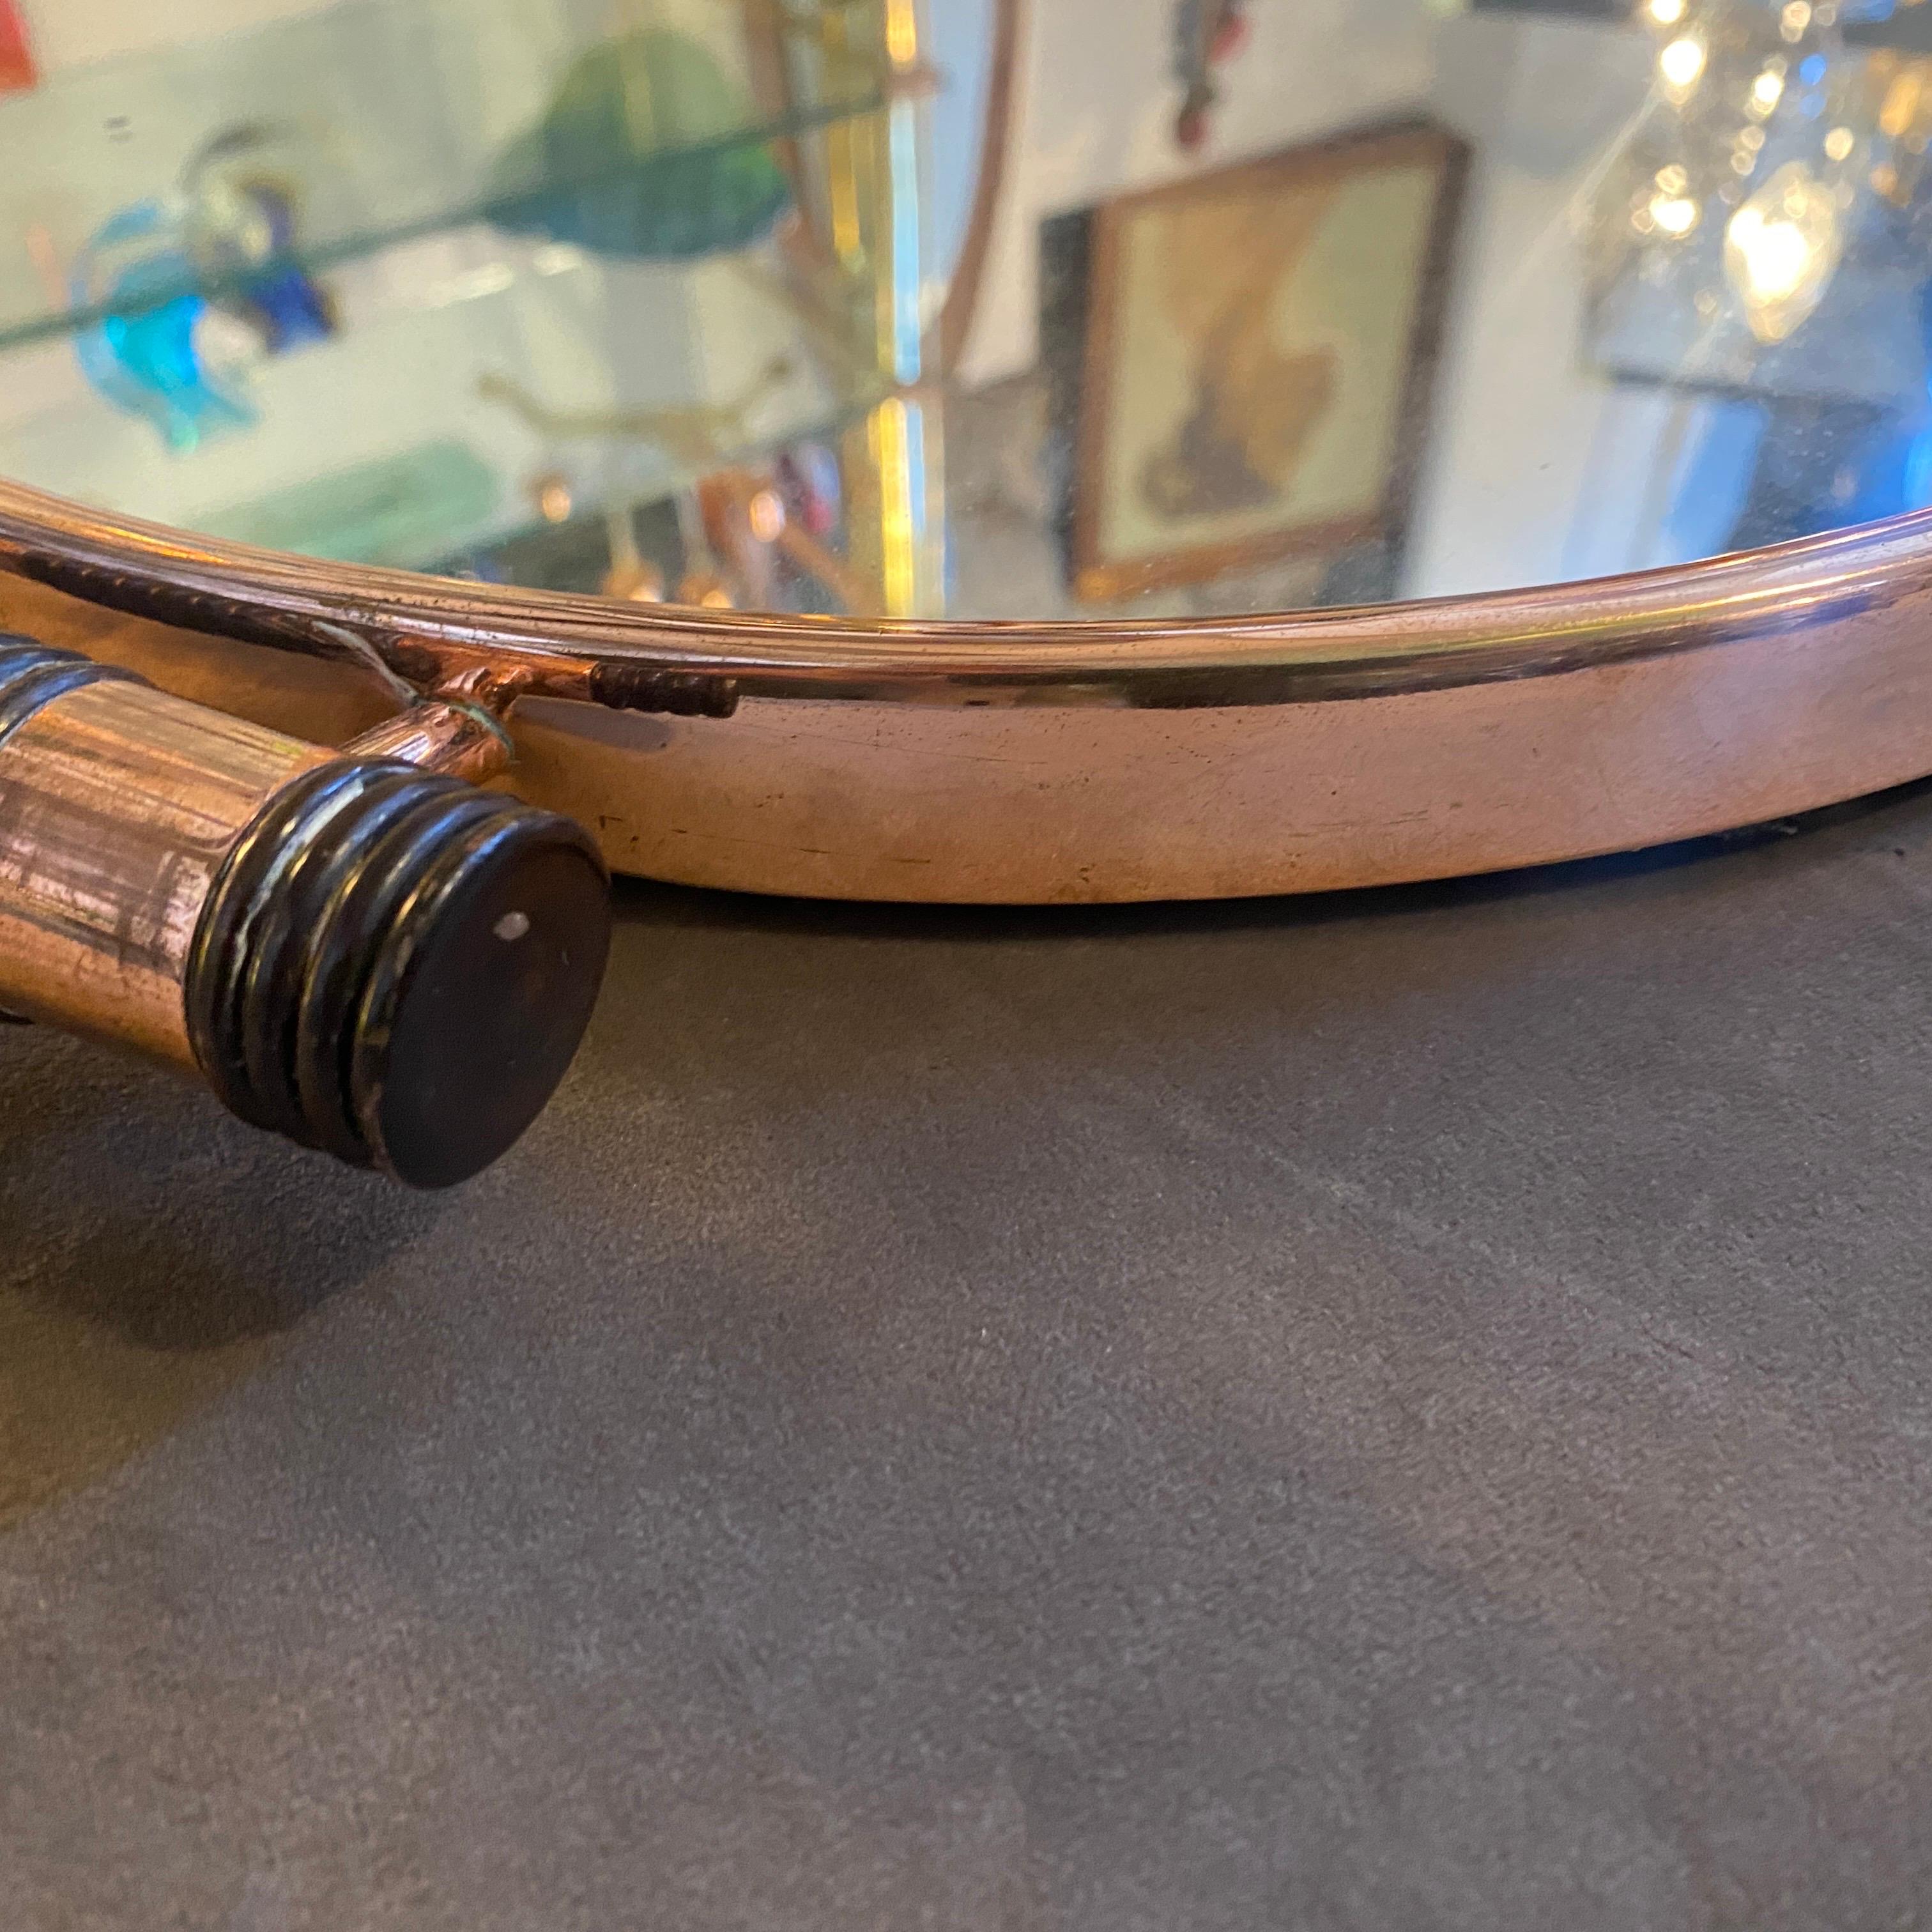 20th Century A 1930s Art Deco Copper Copper Mirror and Ebony Handles Italian Round Tray For Sale